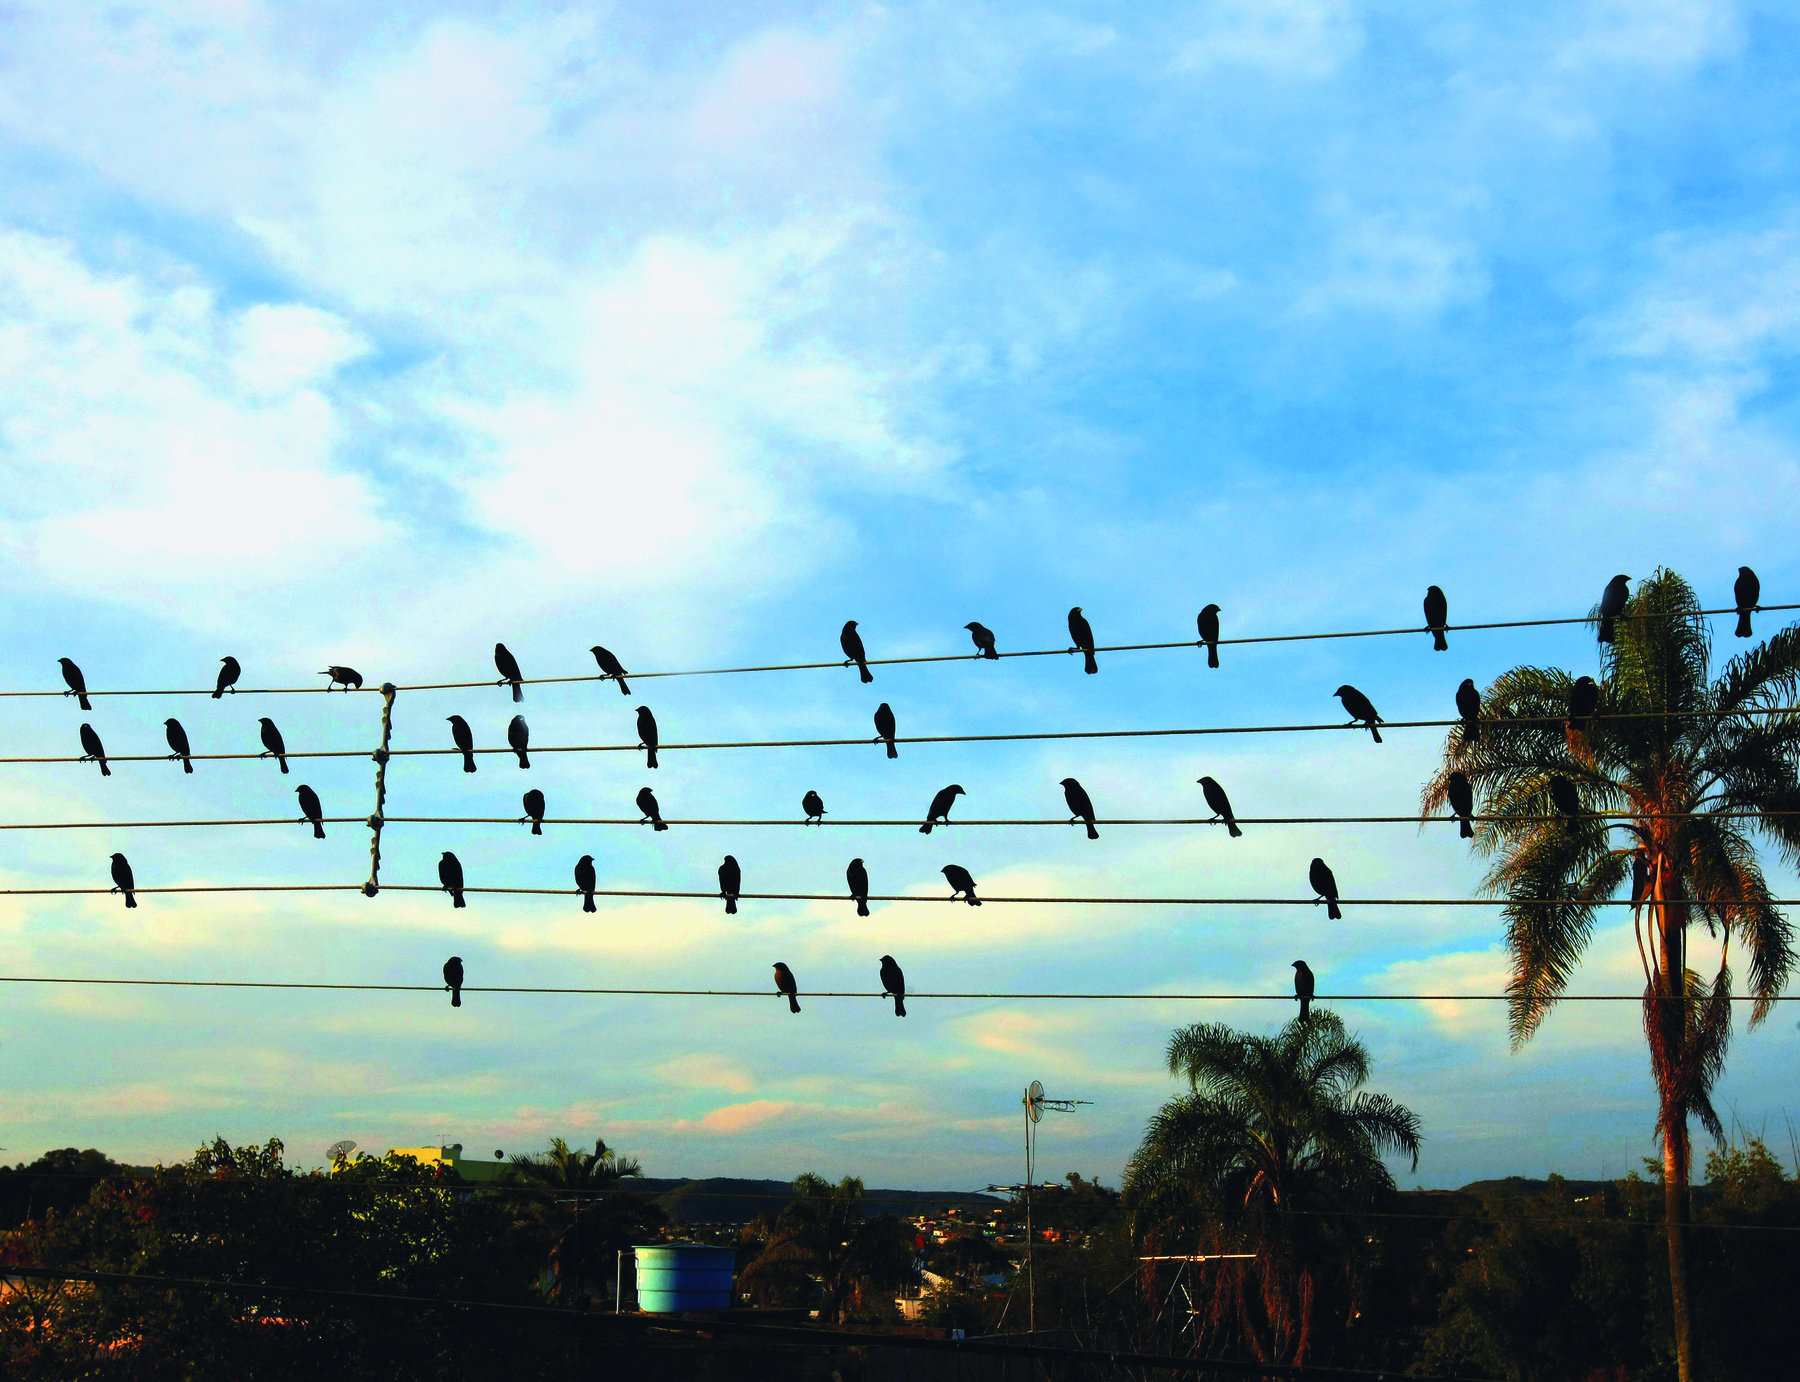 Fotografia. Vista de céu azul com nuvens brancas. Em primeiro plano, cinco fios elétricos e pássaros pousados neles, semelhantes a notas musicais em um pentagrama.